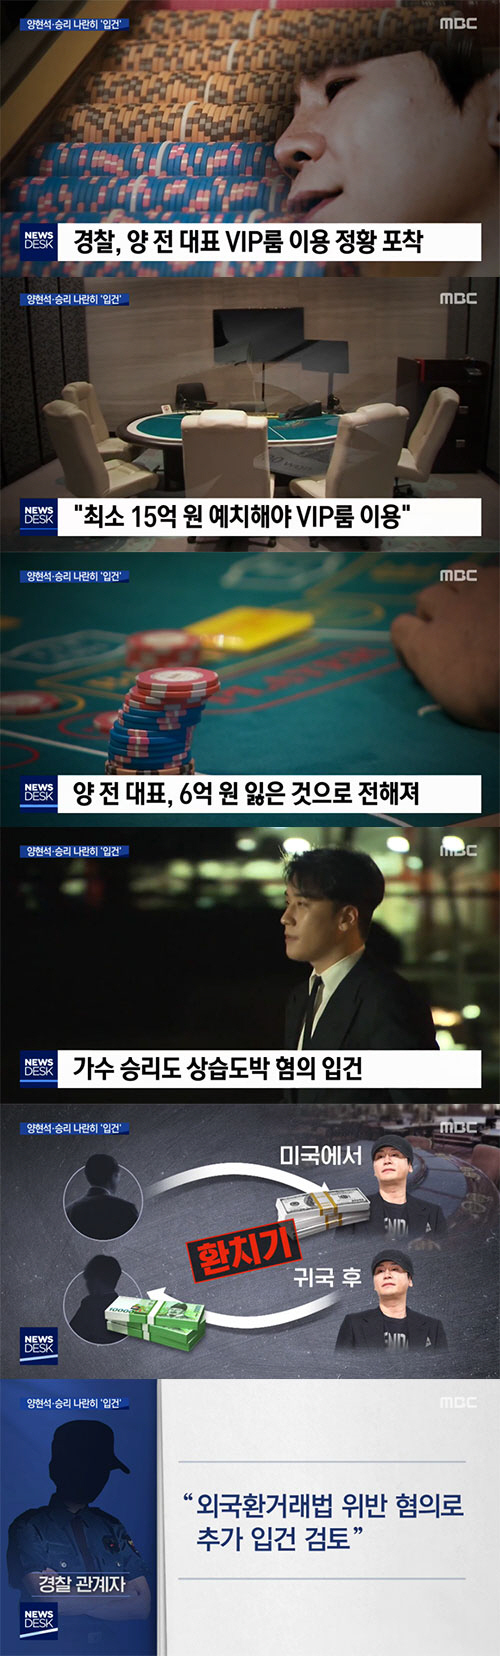 '뉴스데스크' "양현석 도박으로 6억 잃어…승리, 상습도박"